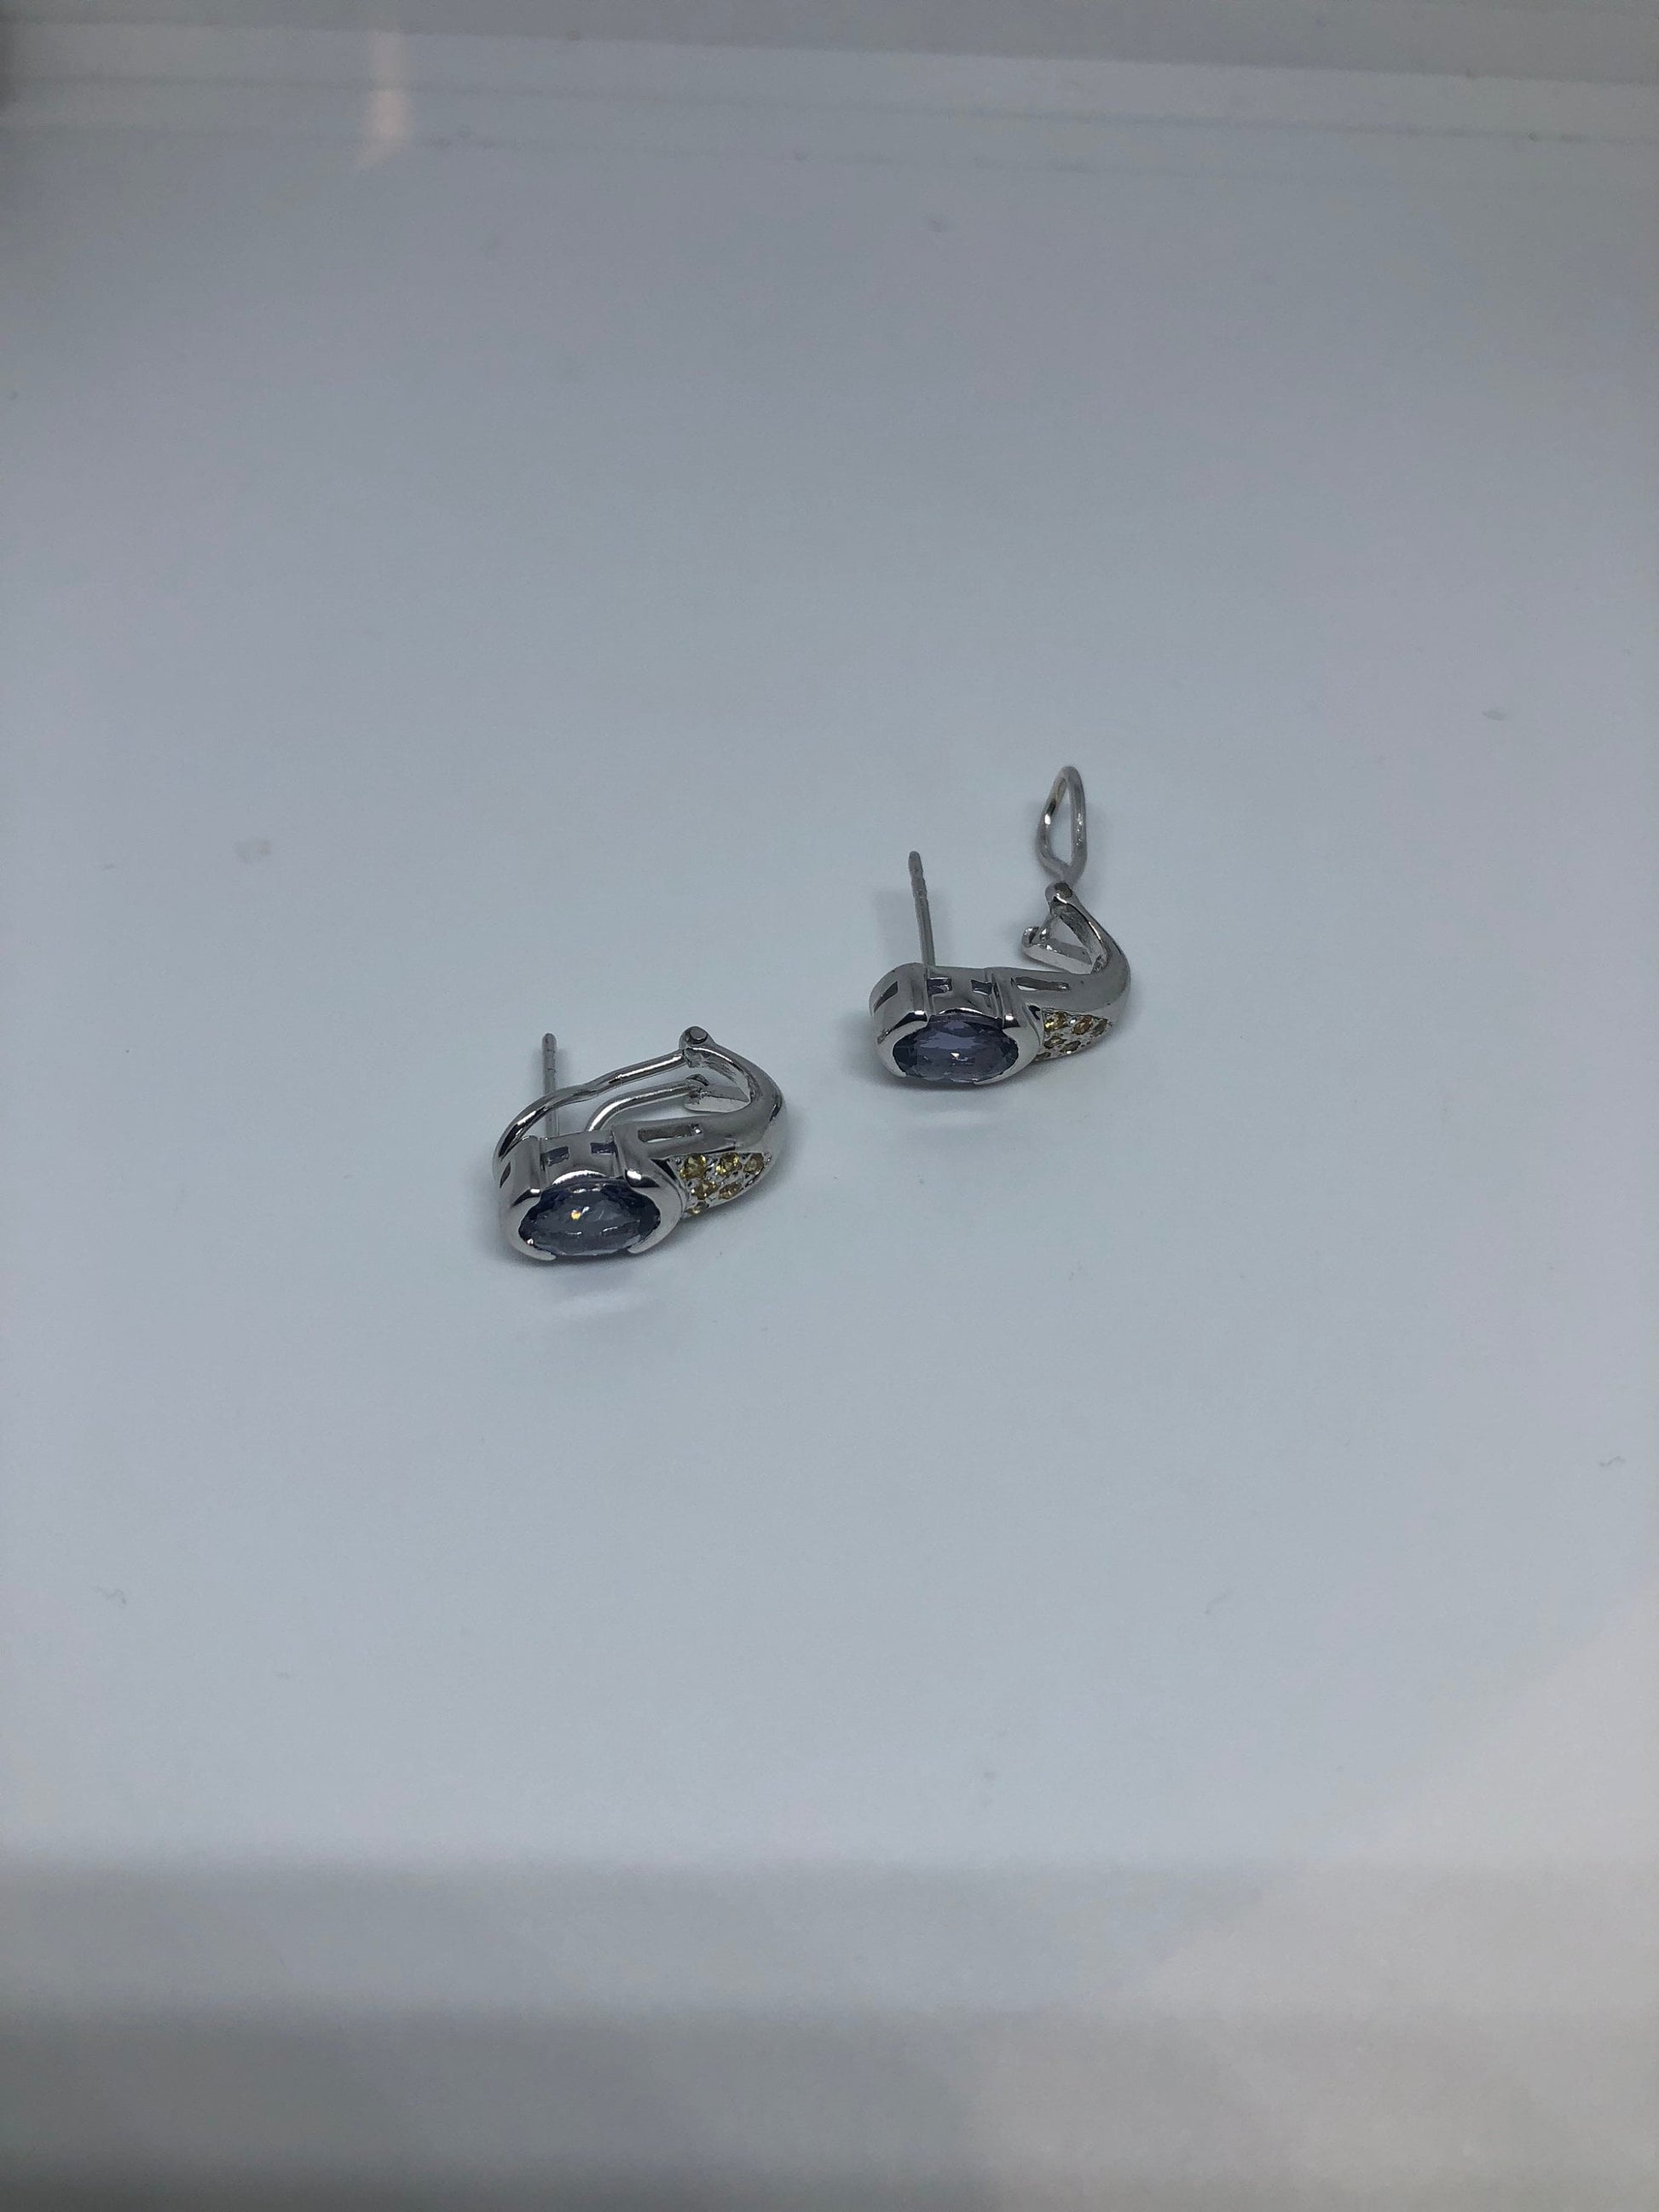 Vintage Sterling Silver Blue Iolite Earrings